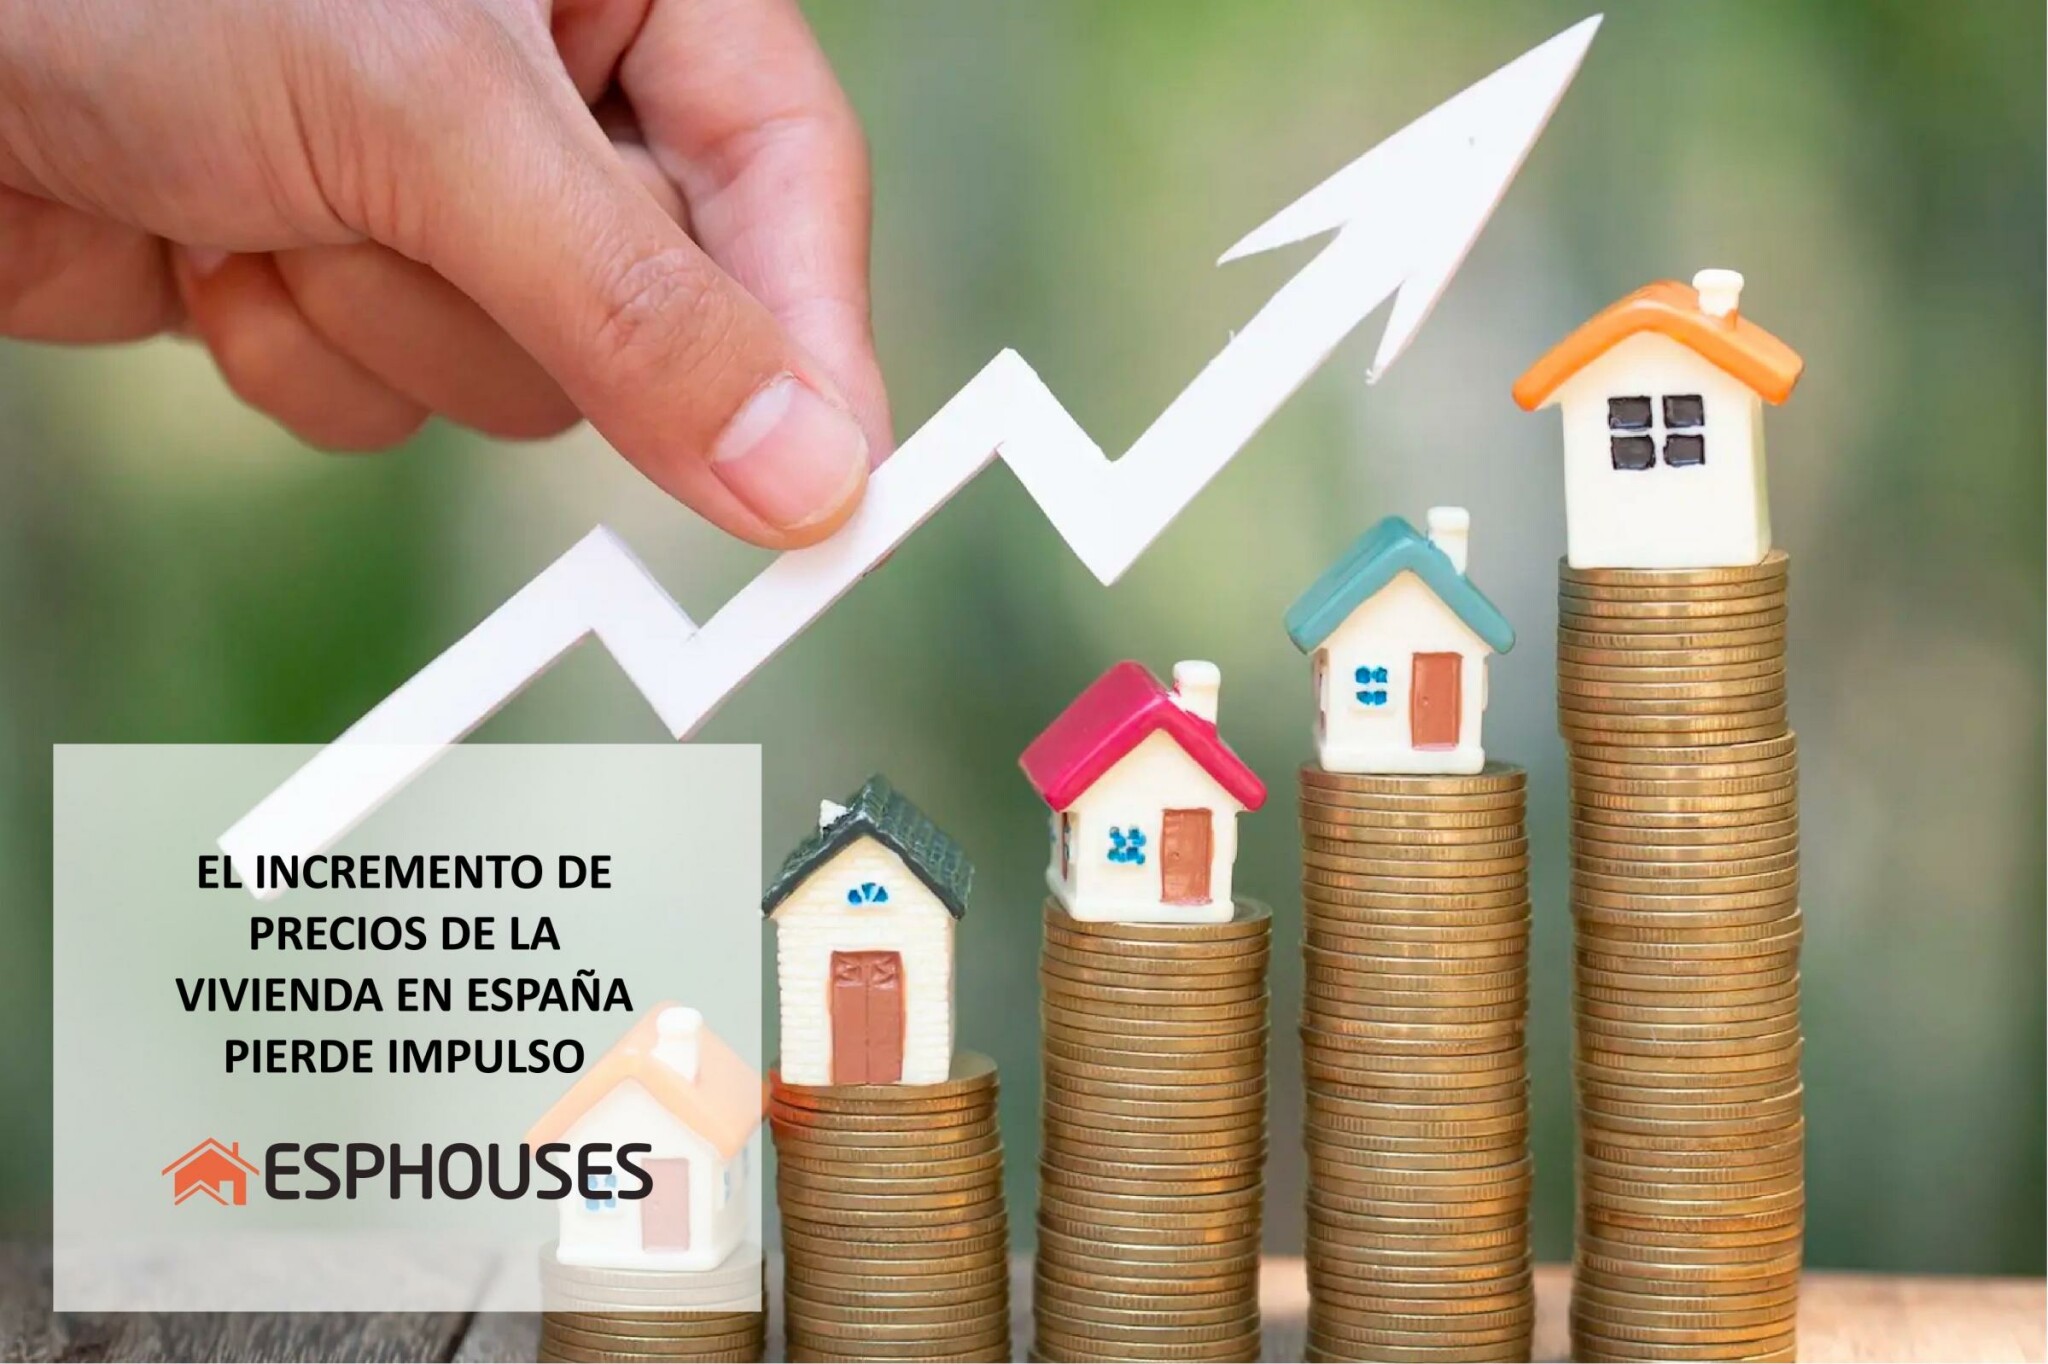 El incremento de precios de la vivienda en España pierde impulso